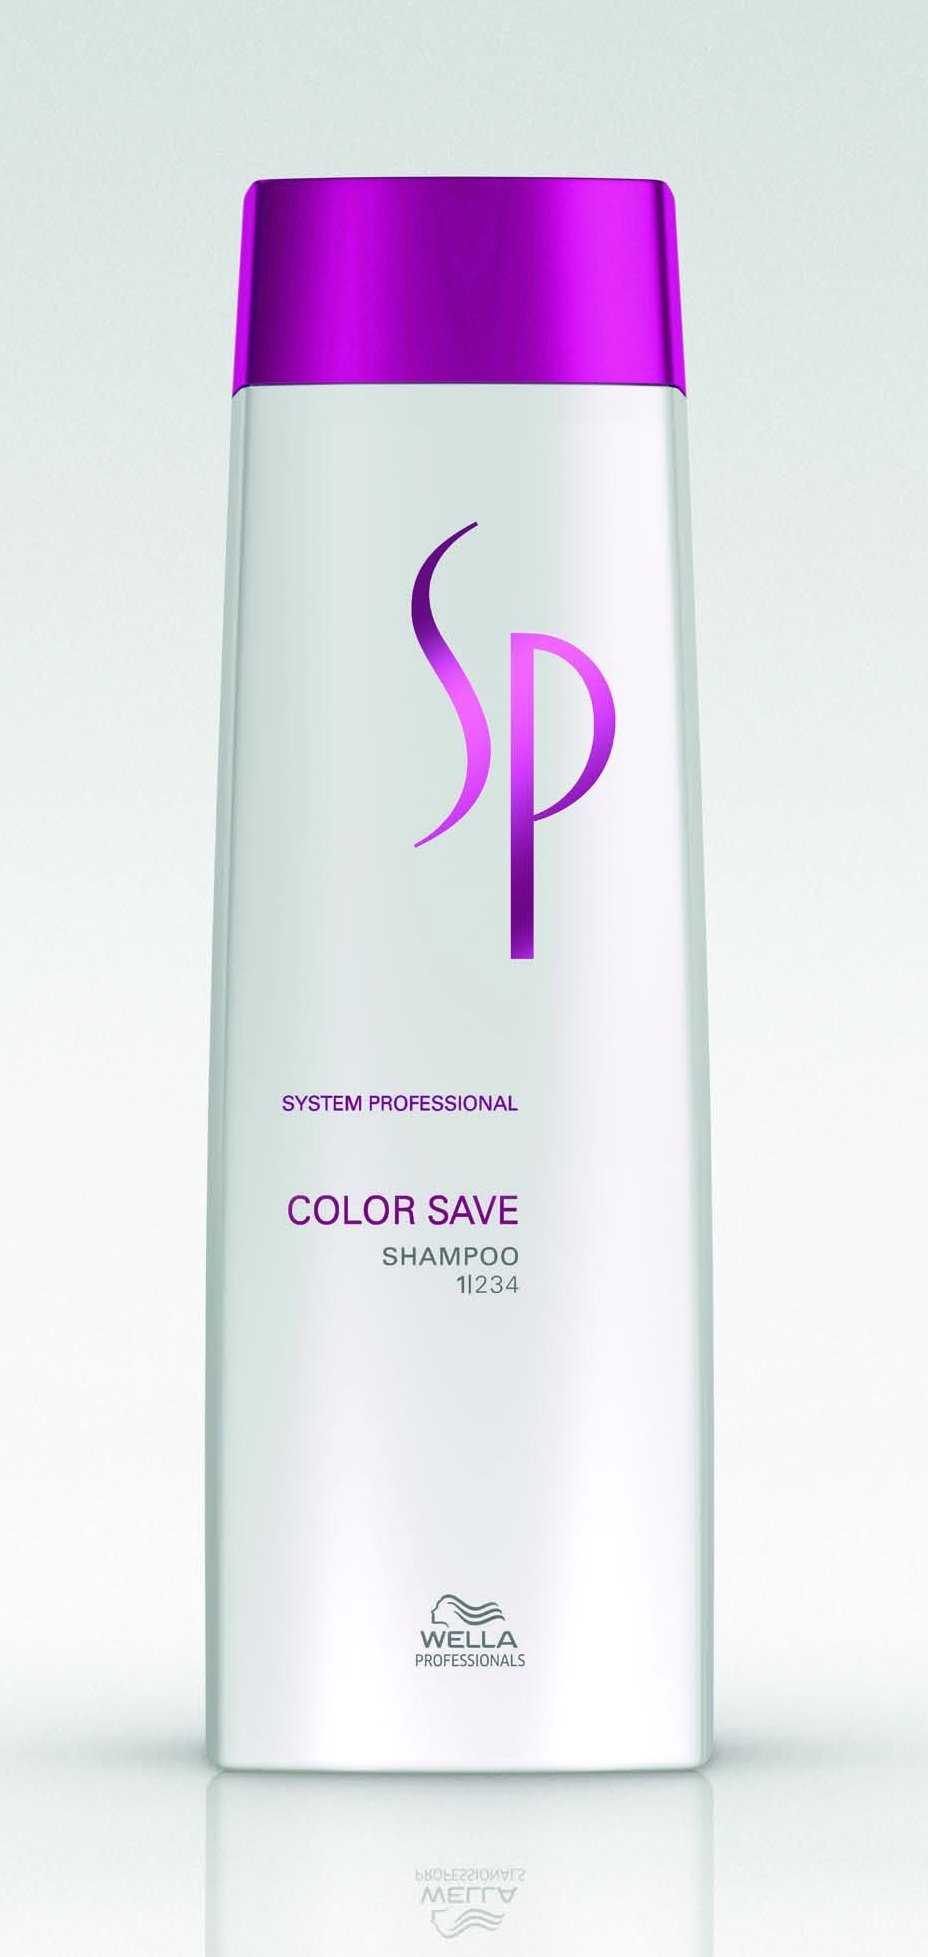 Шампуни для волос:  System Professional -  Шампунь, сохраняющий цвет окрашенных волос Color Save Shampoo (250 мл)